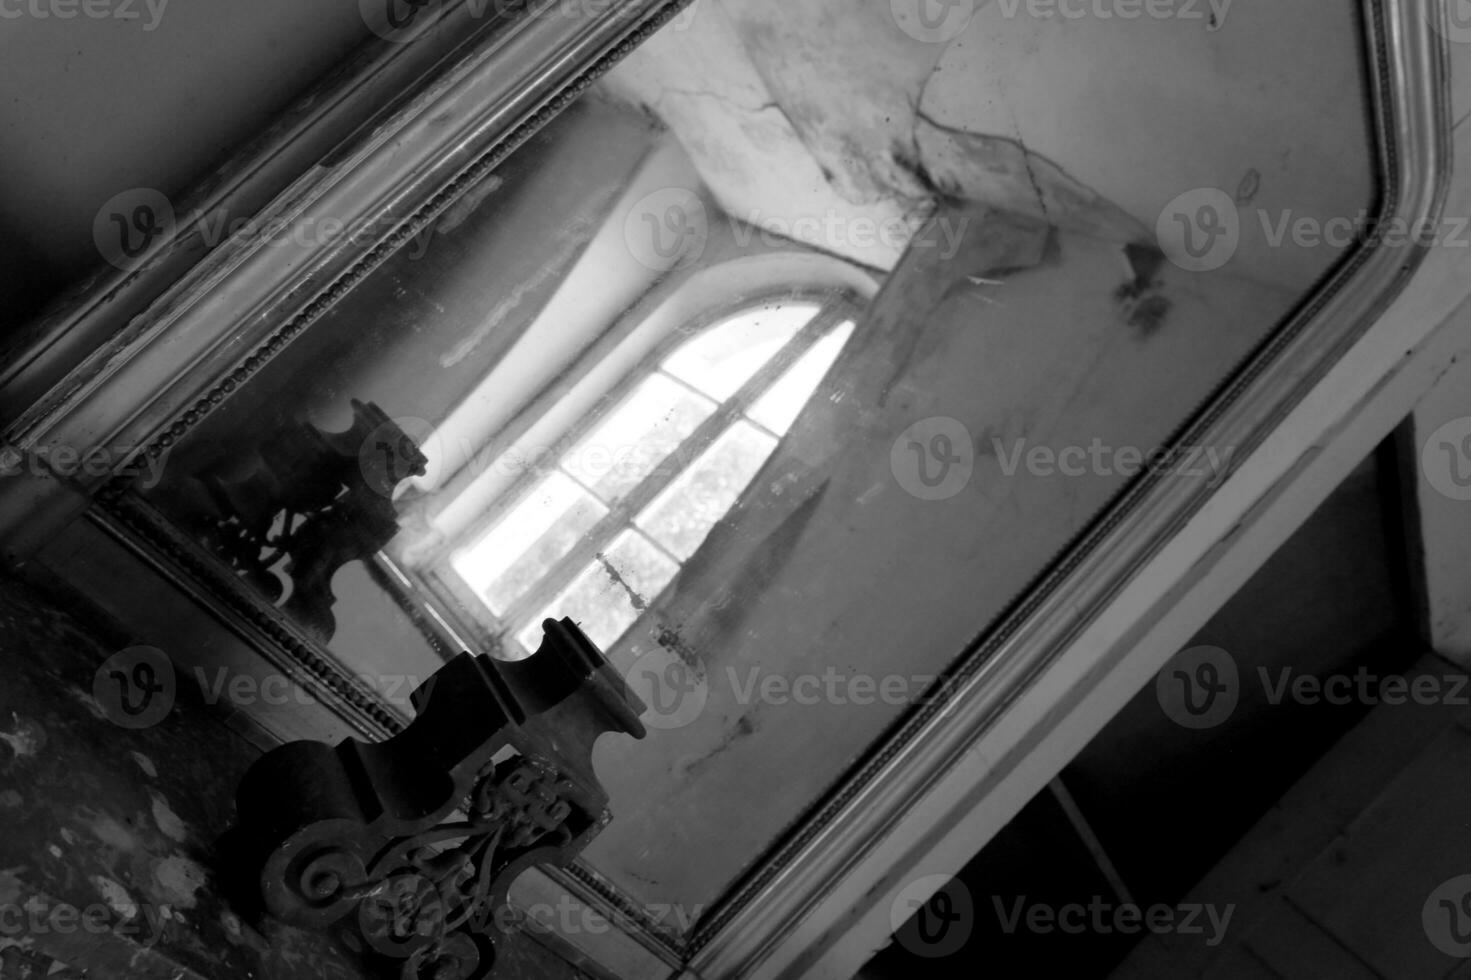 bellissimo specchio con cornice in legno in un vecchio edificio senza persone foto